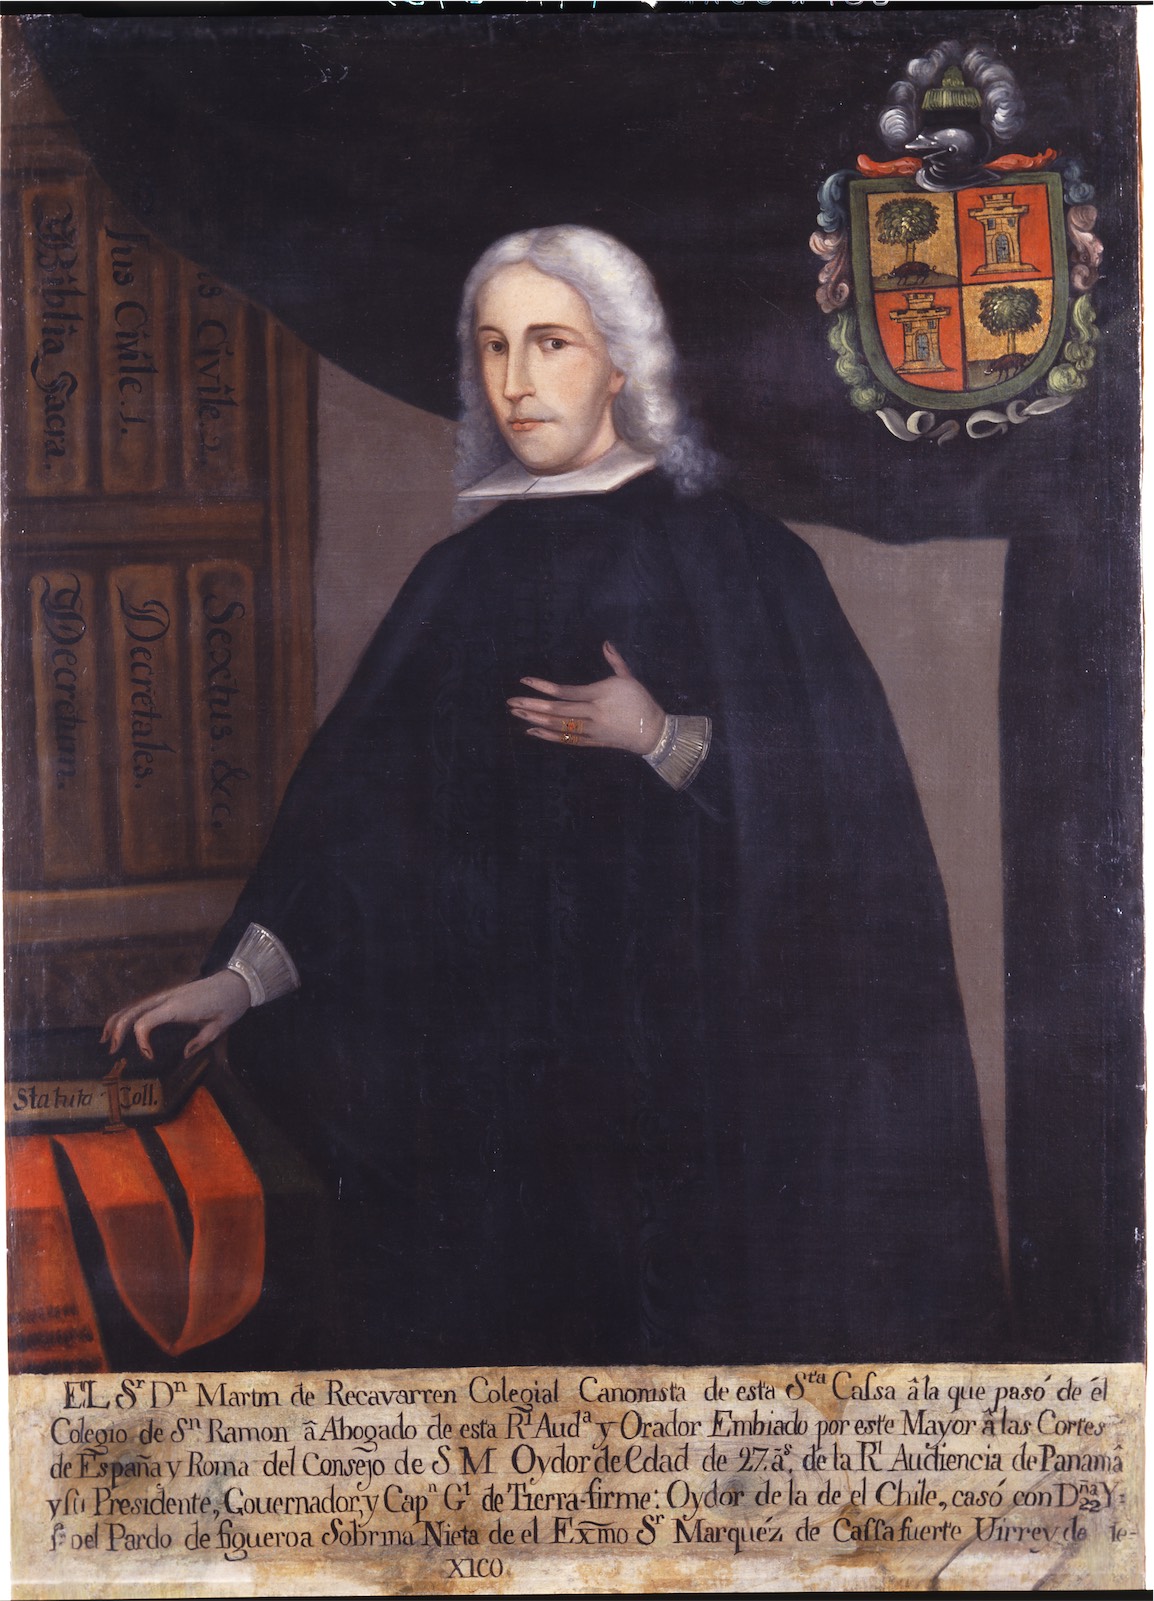 Martín de Recavarren